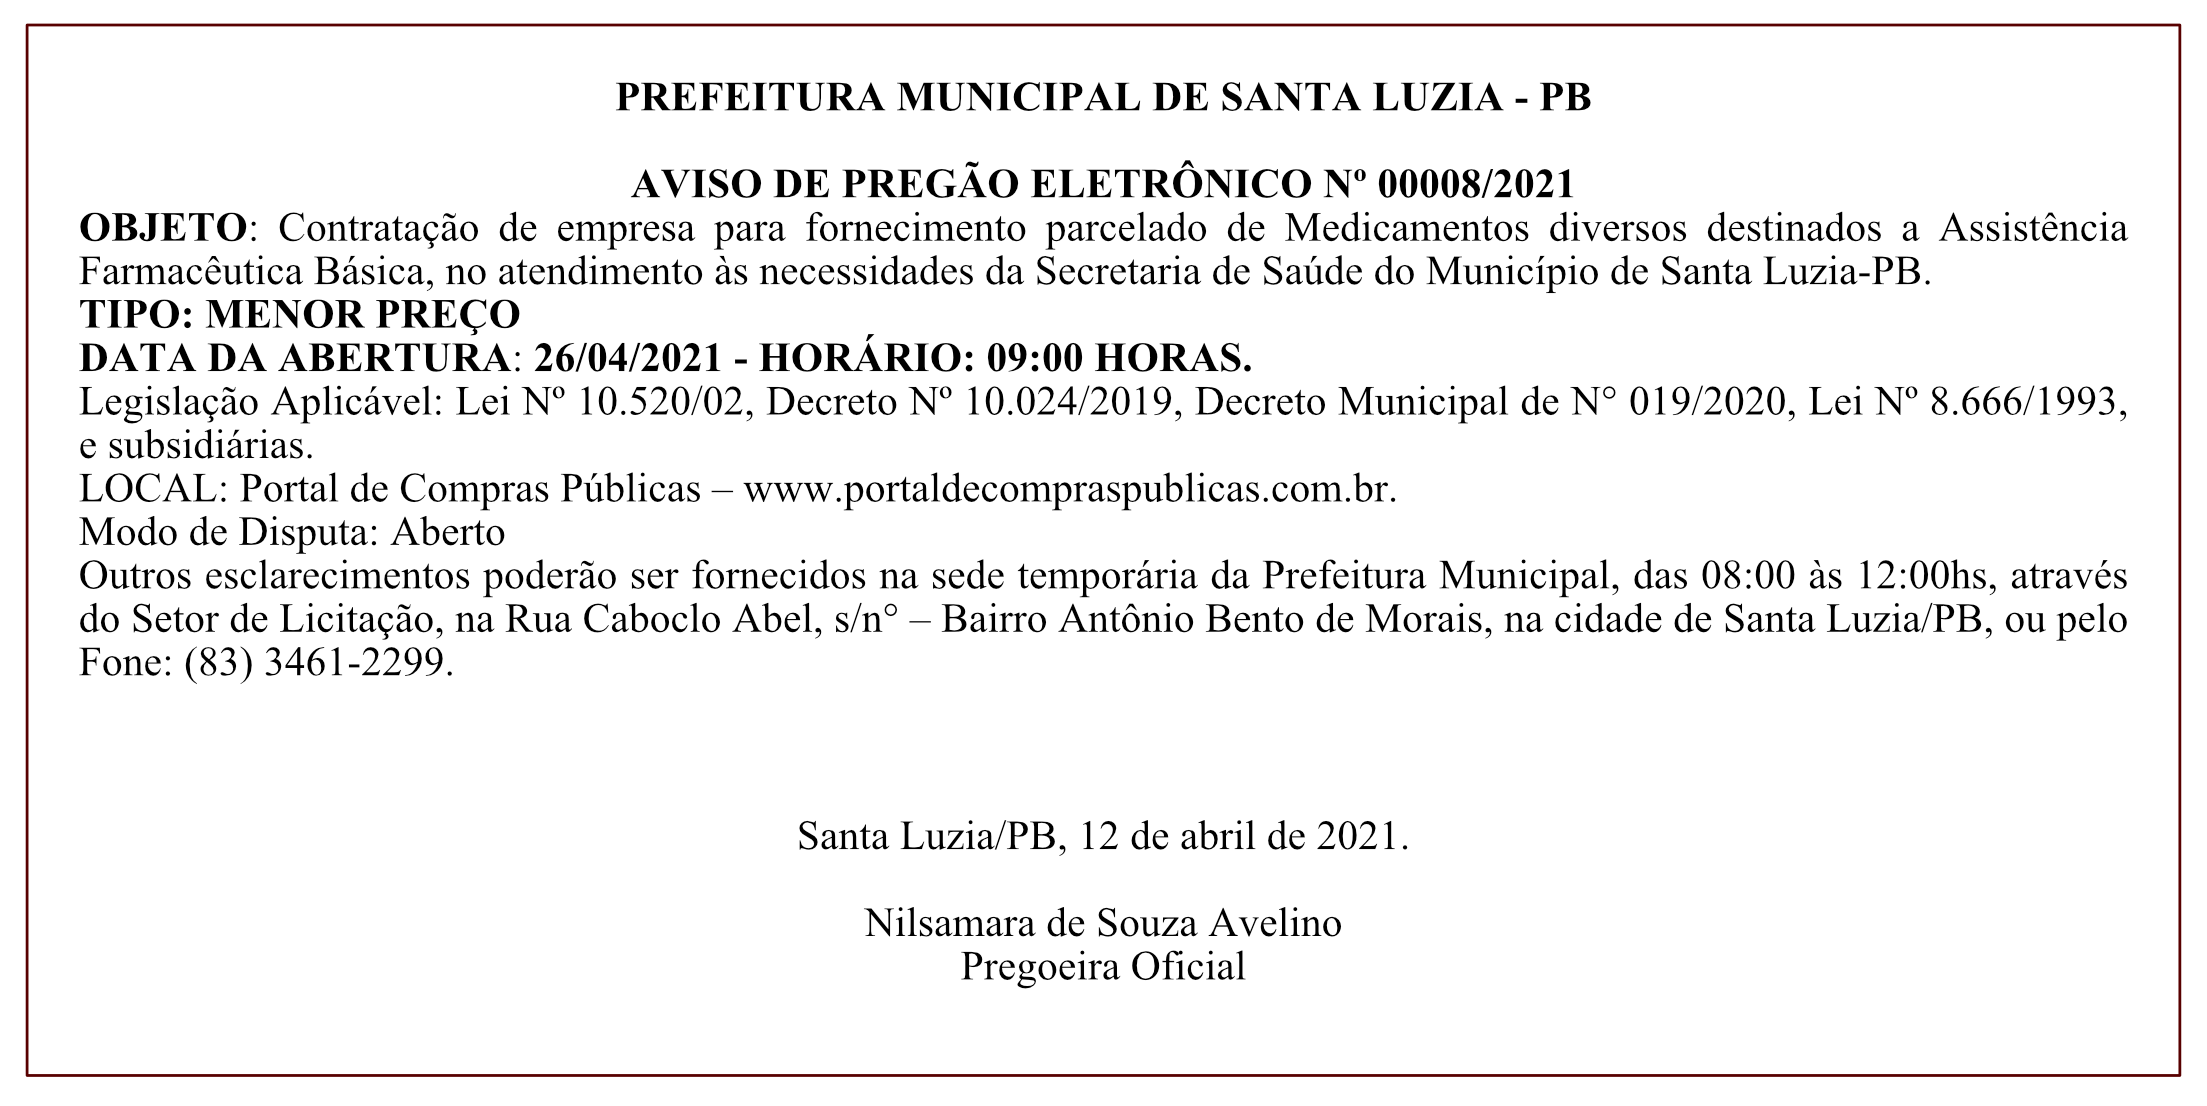 PREFEITURA MUNICIPAL DE SANTA LUZIA – AVISO DE PREGÃO ELETRÔNICO Nº 00008/2021